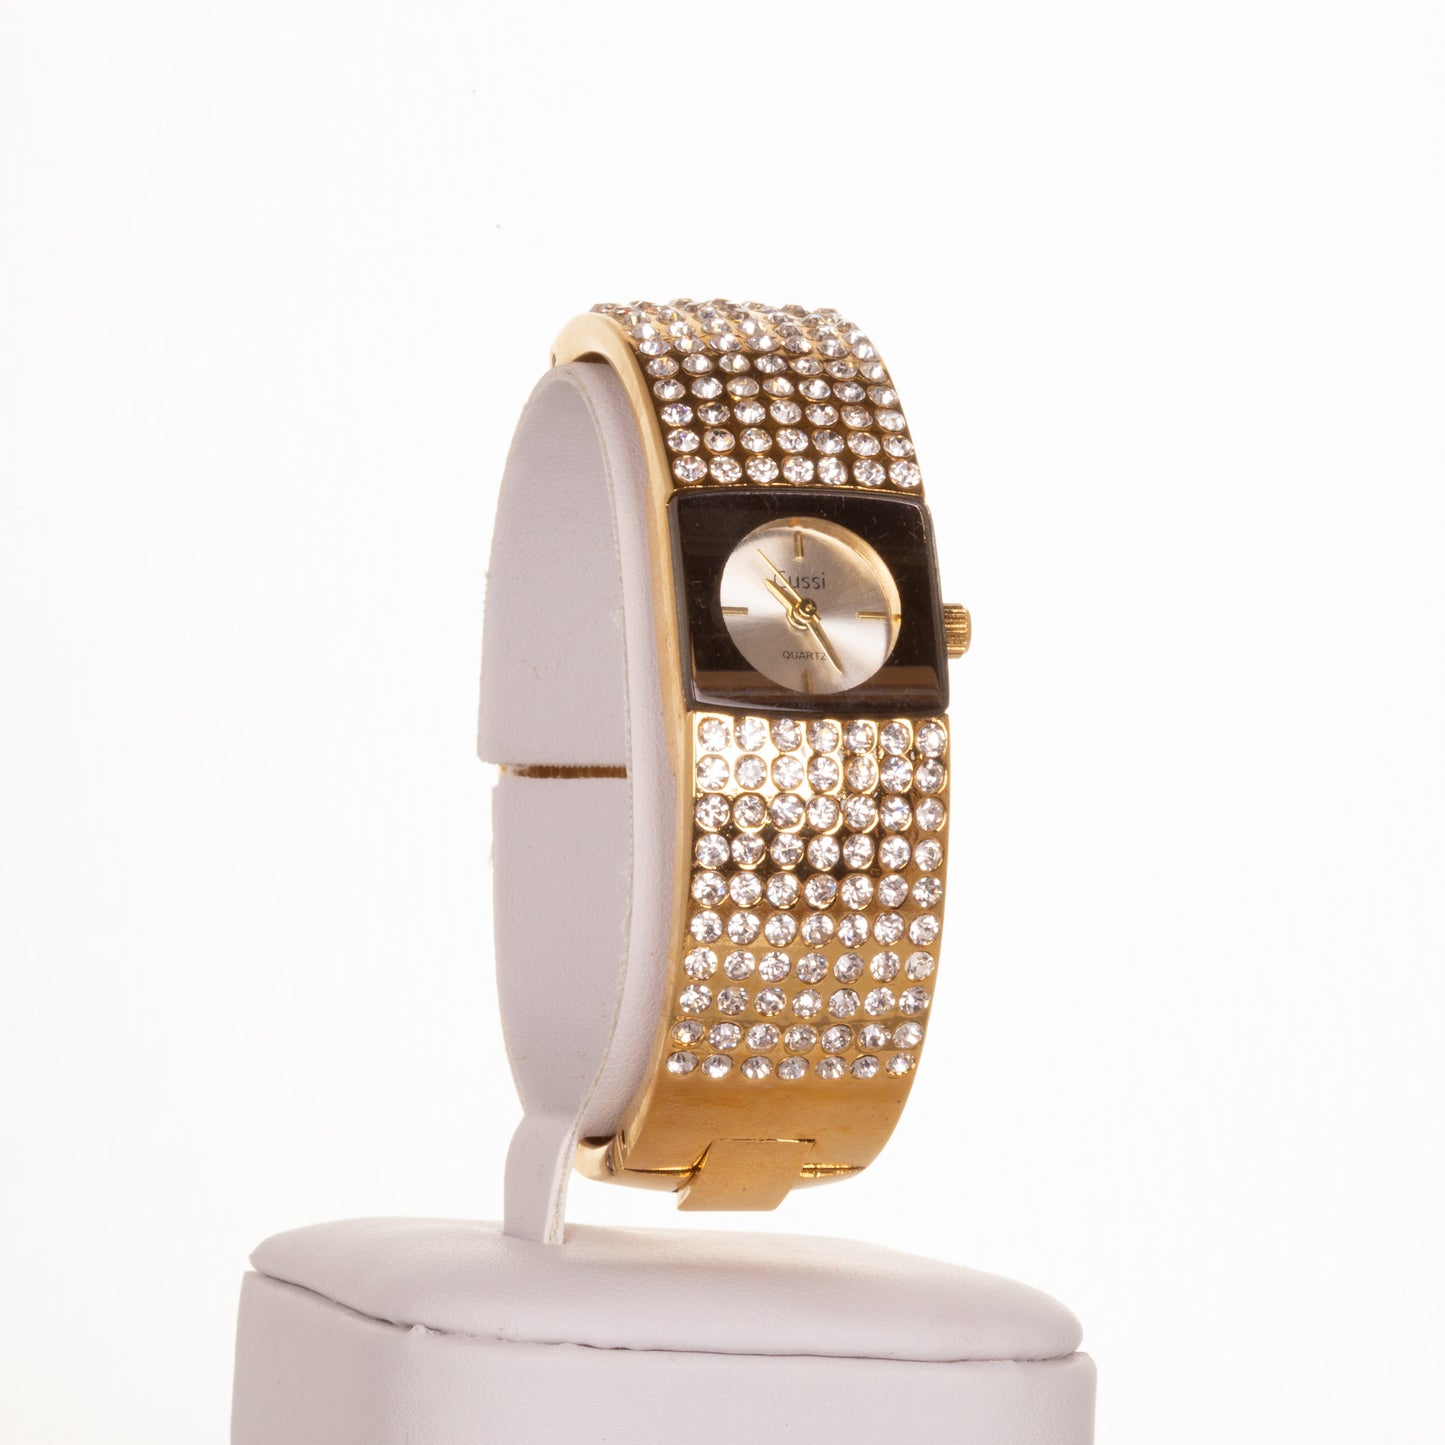 CUSSI dámské hodinky ve zlaté barvě se 7 řadami krystalů křemene